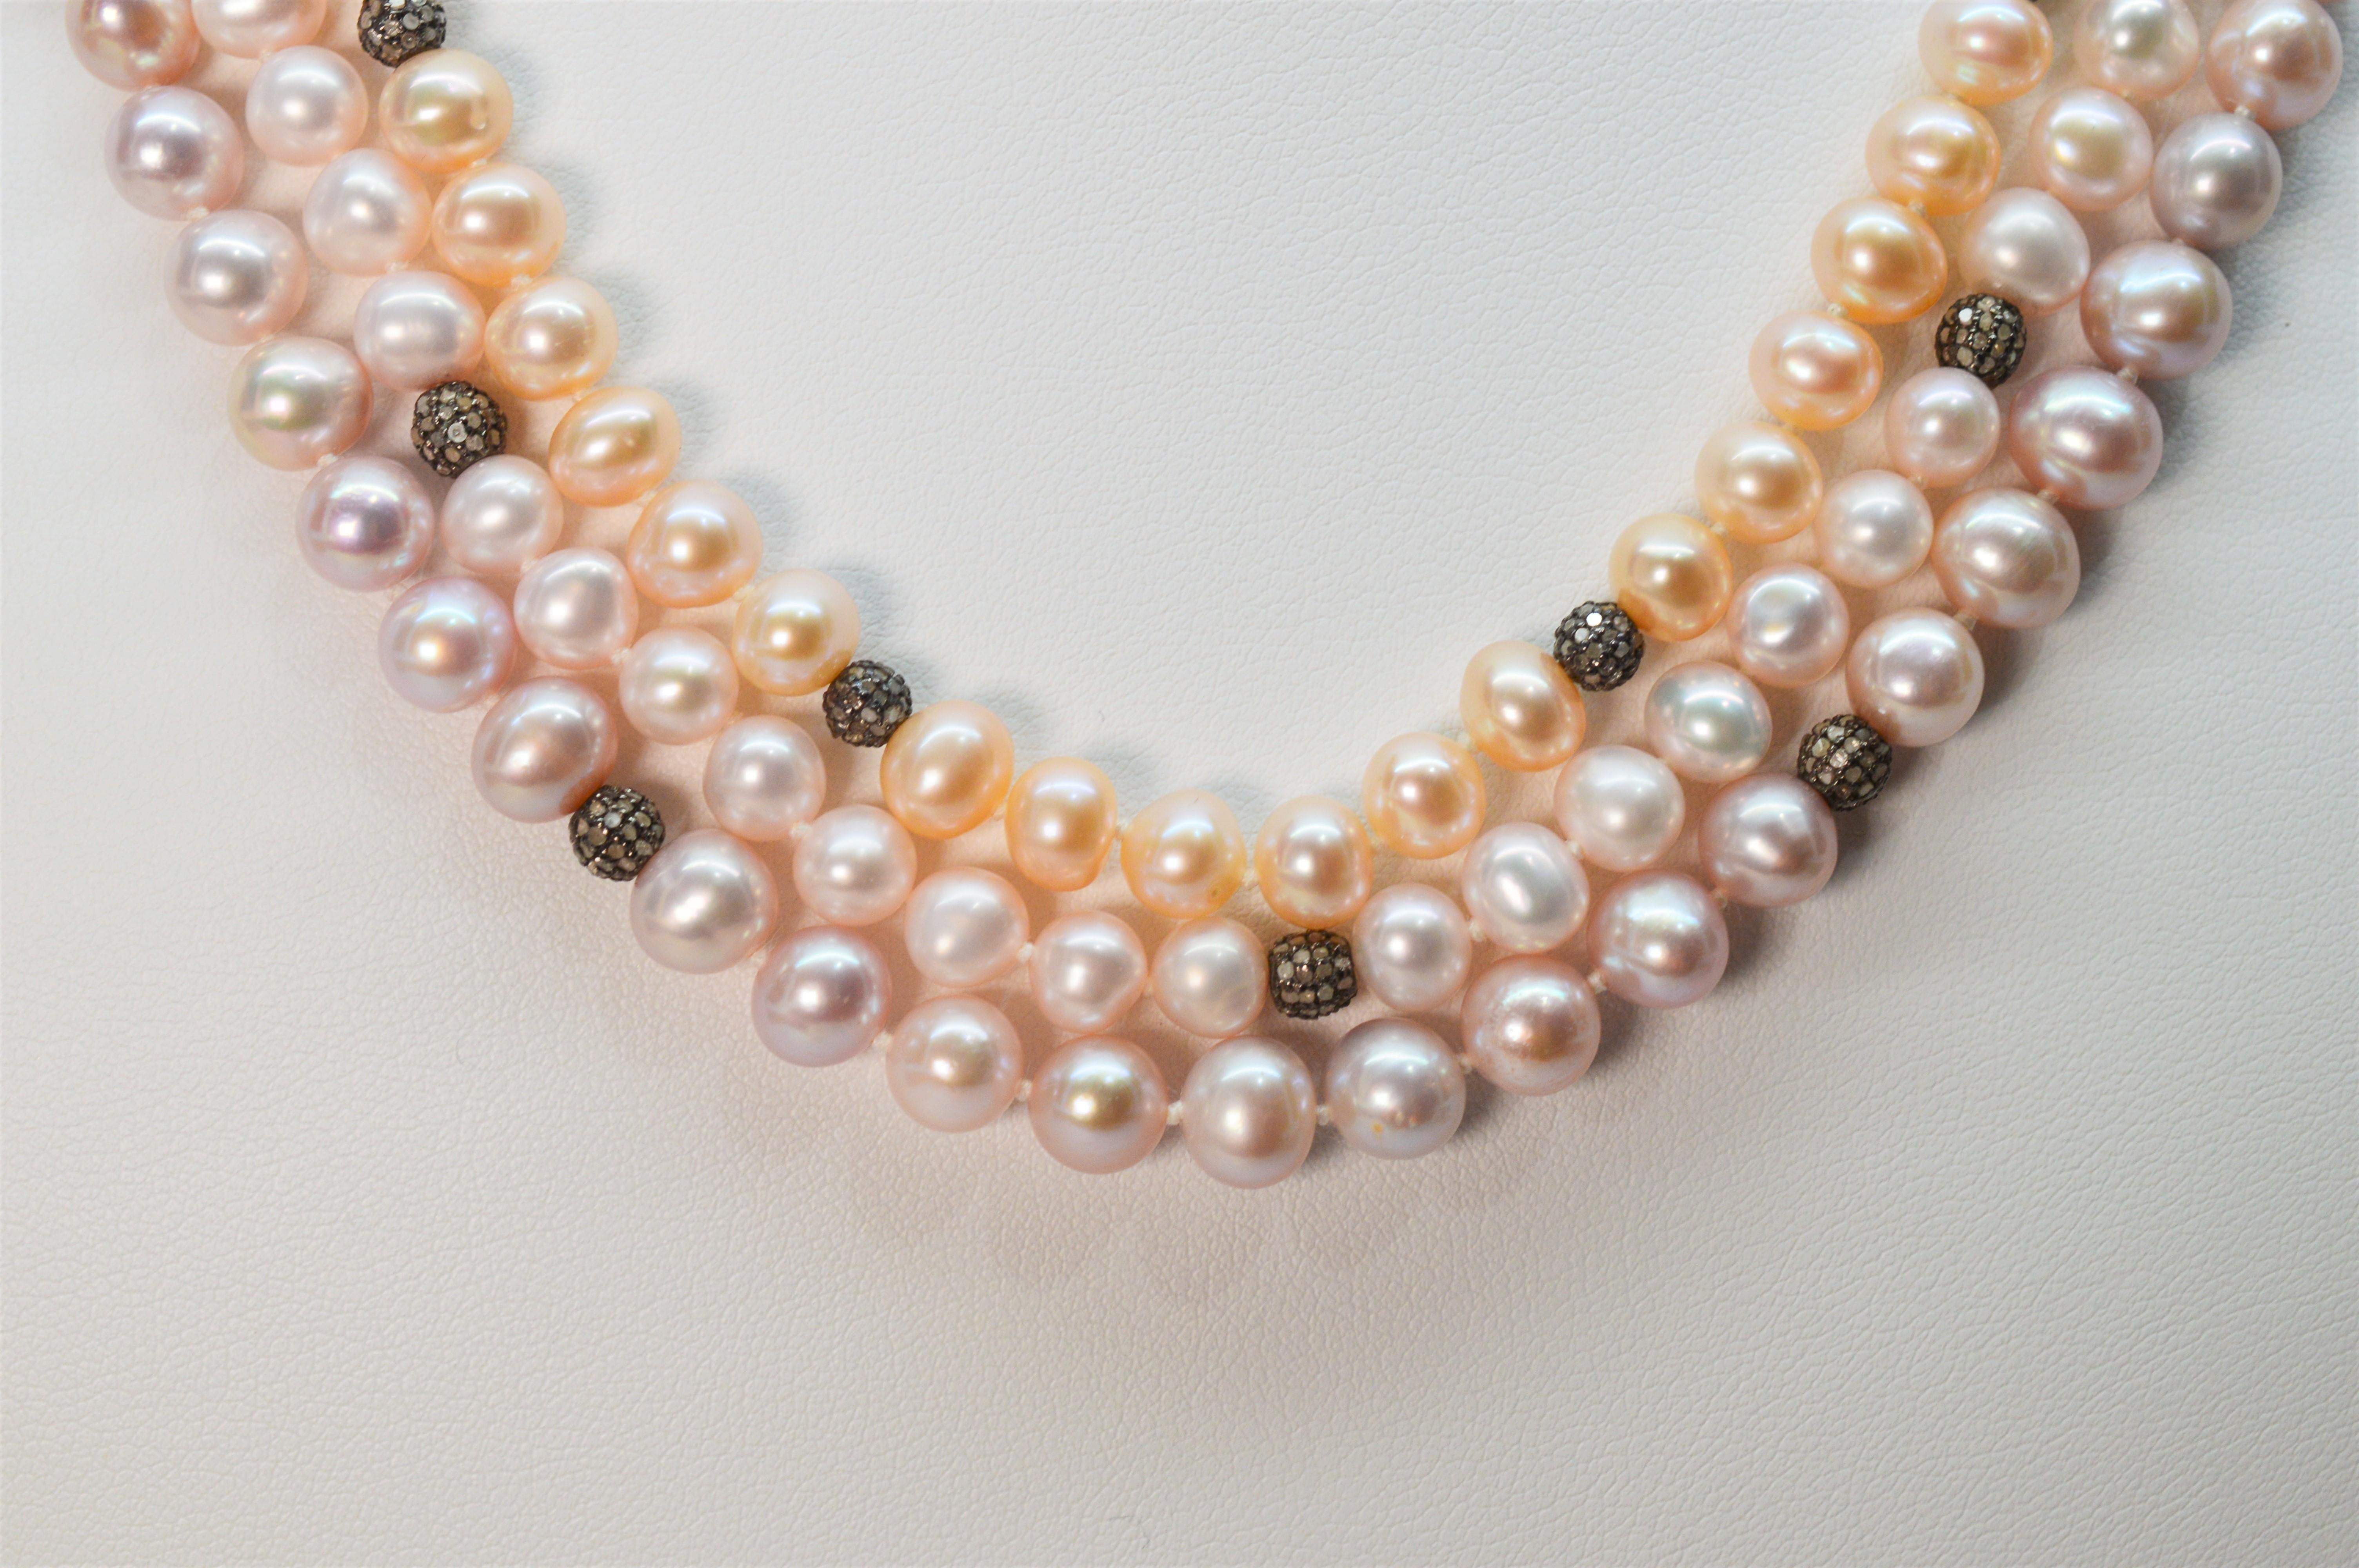 Différentes nuances de couleurs blush clair se complètent et se mêlent pour créer ce collier multibrins unique en perles Akoya pastel. Chaque brin de perle est rehaussé de minuscules perles décoratives en argent sterling rehaussées de diamants, qui